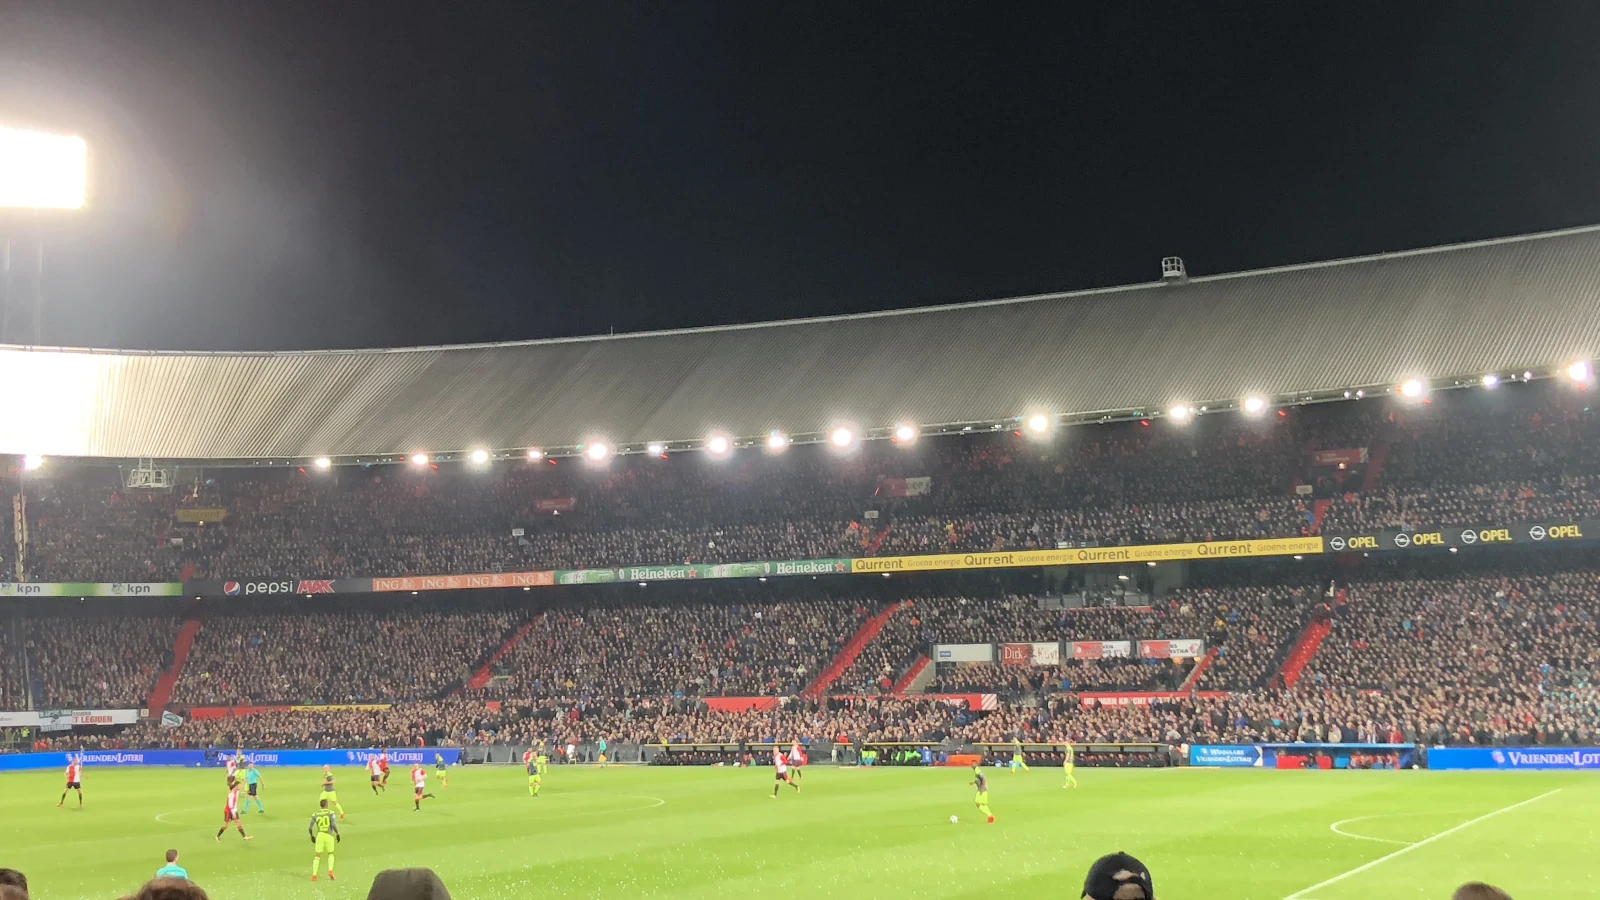 LIVE | Feyenoord - De Graafschap 4-0 | Einde wedstrijd